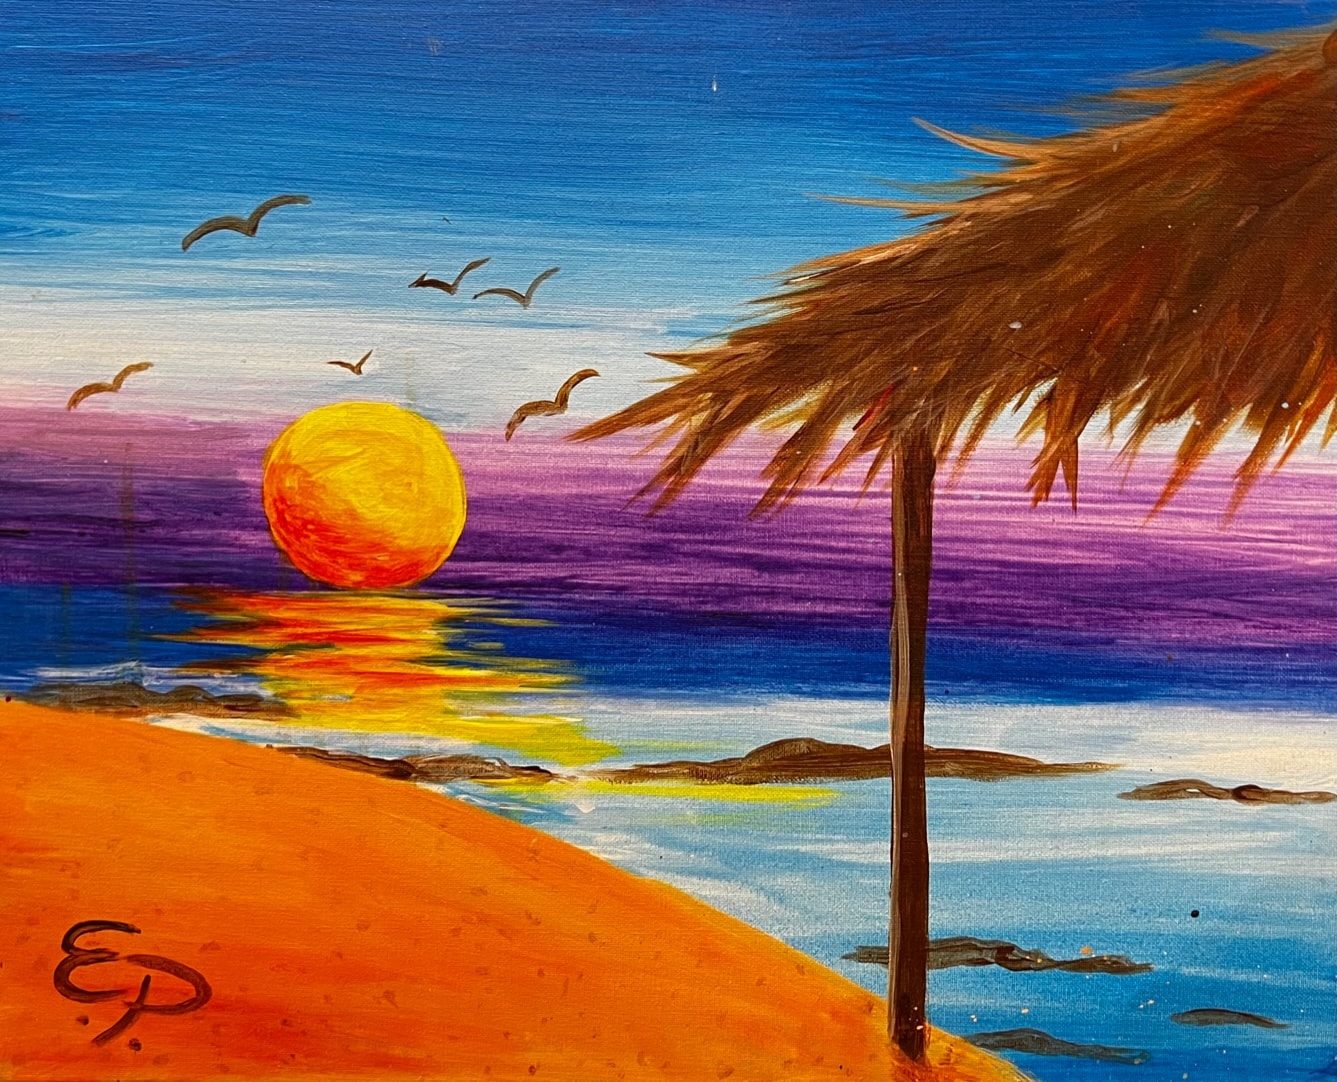 sunset at beach with cabana